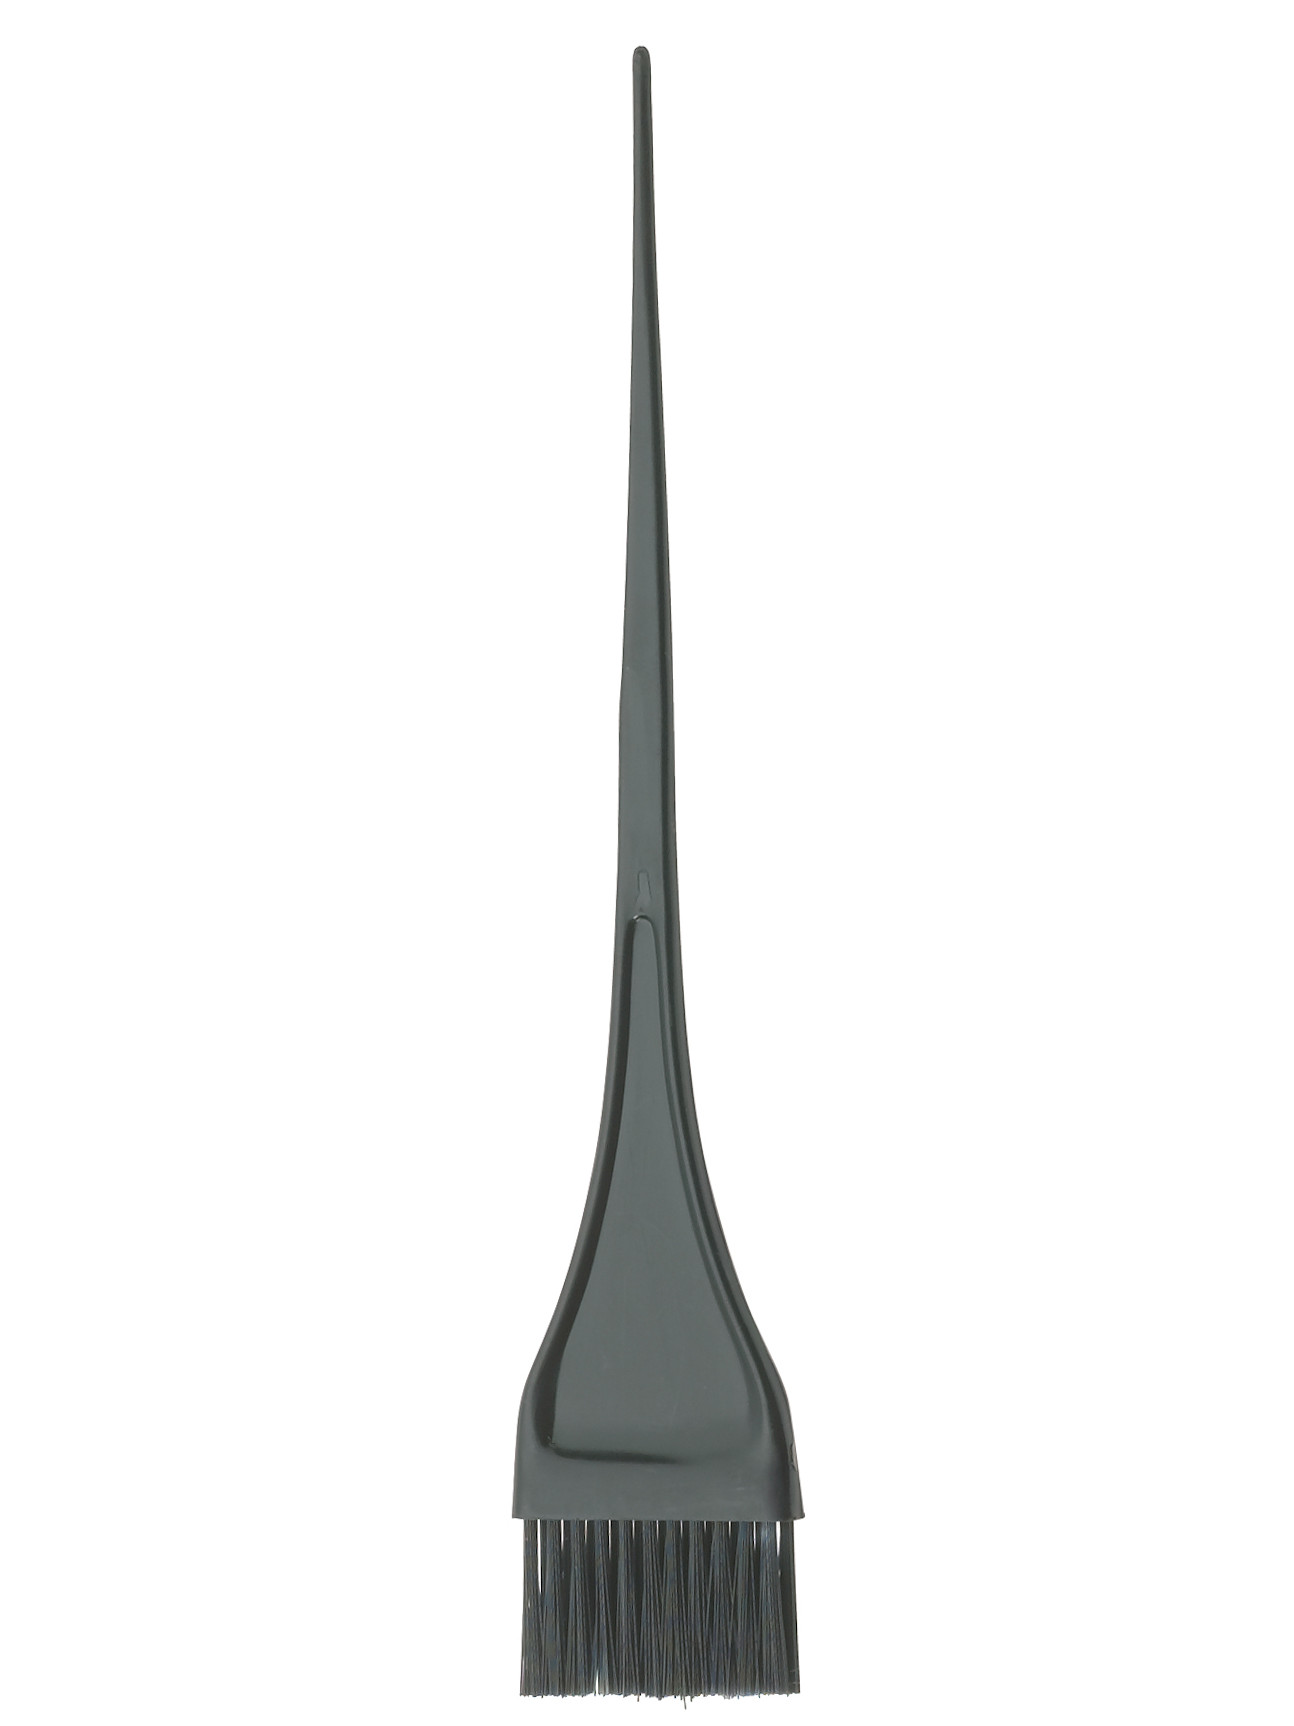 Štětec na barvení vlasů Sibel 8450131 - 3,5 cm černý